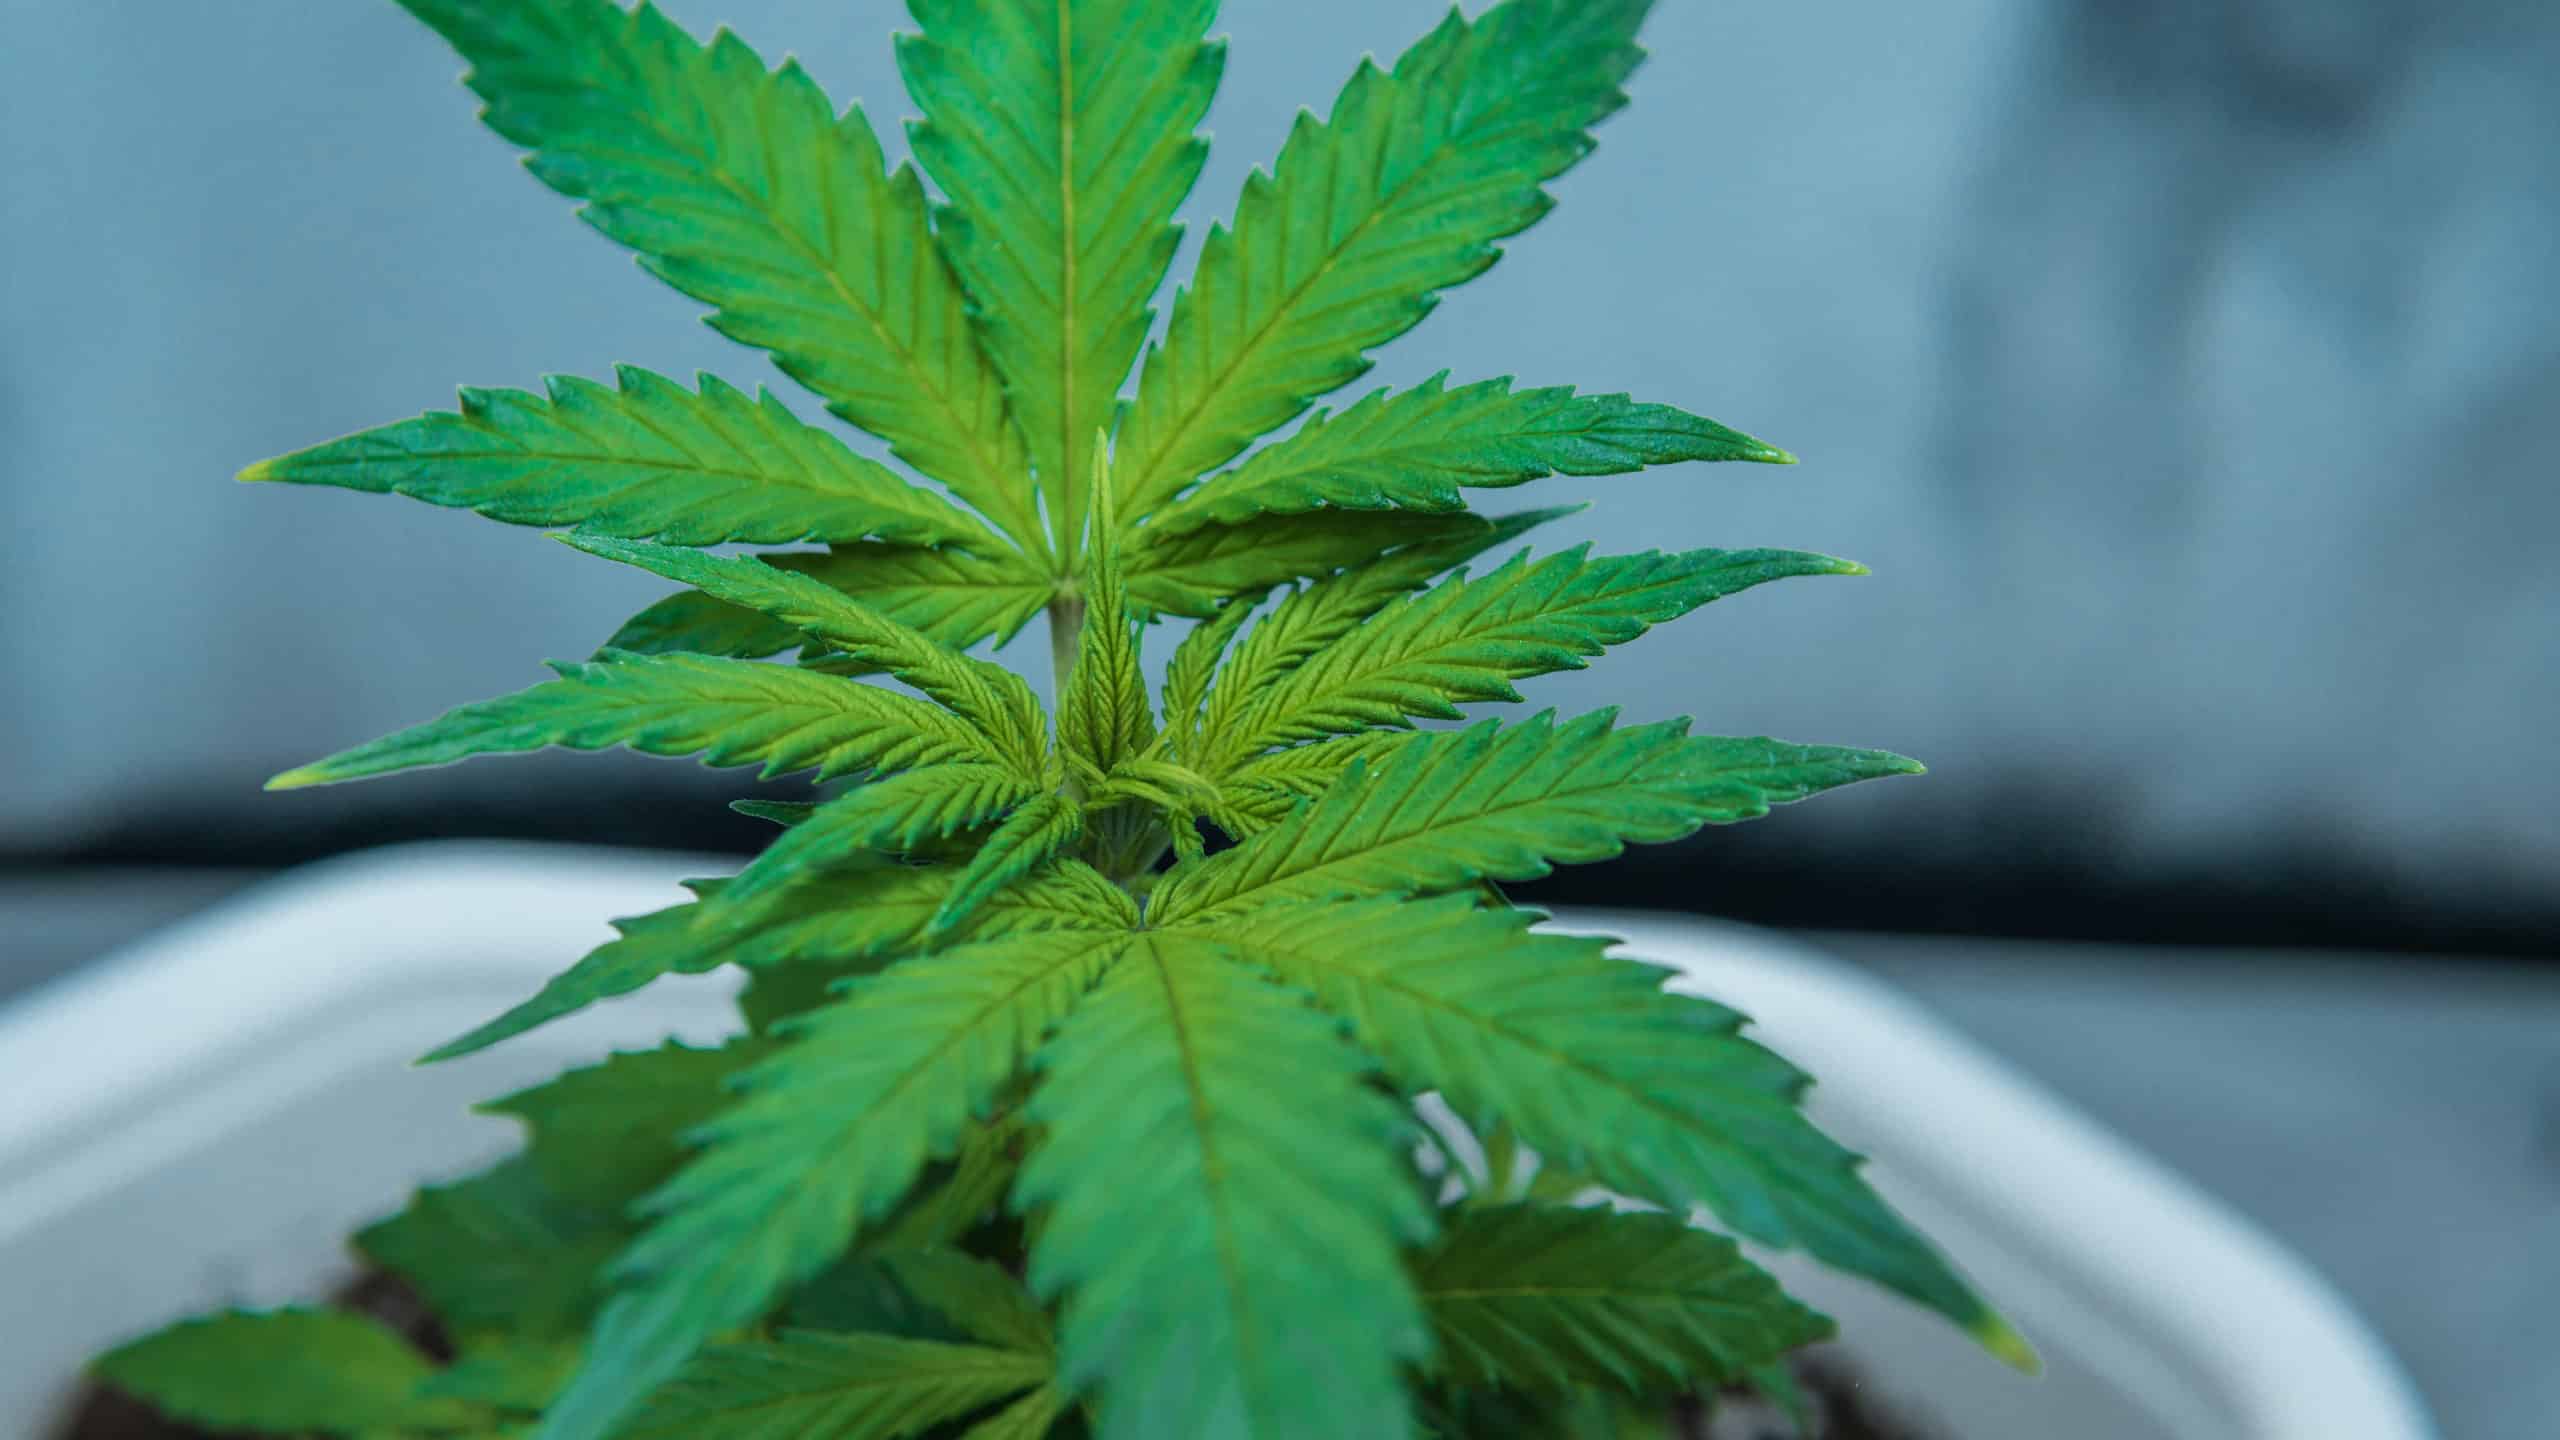 Marijuana grow box with marijuana plant in it.